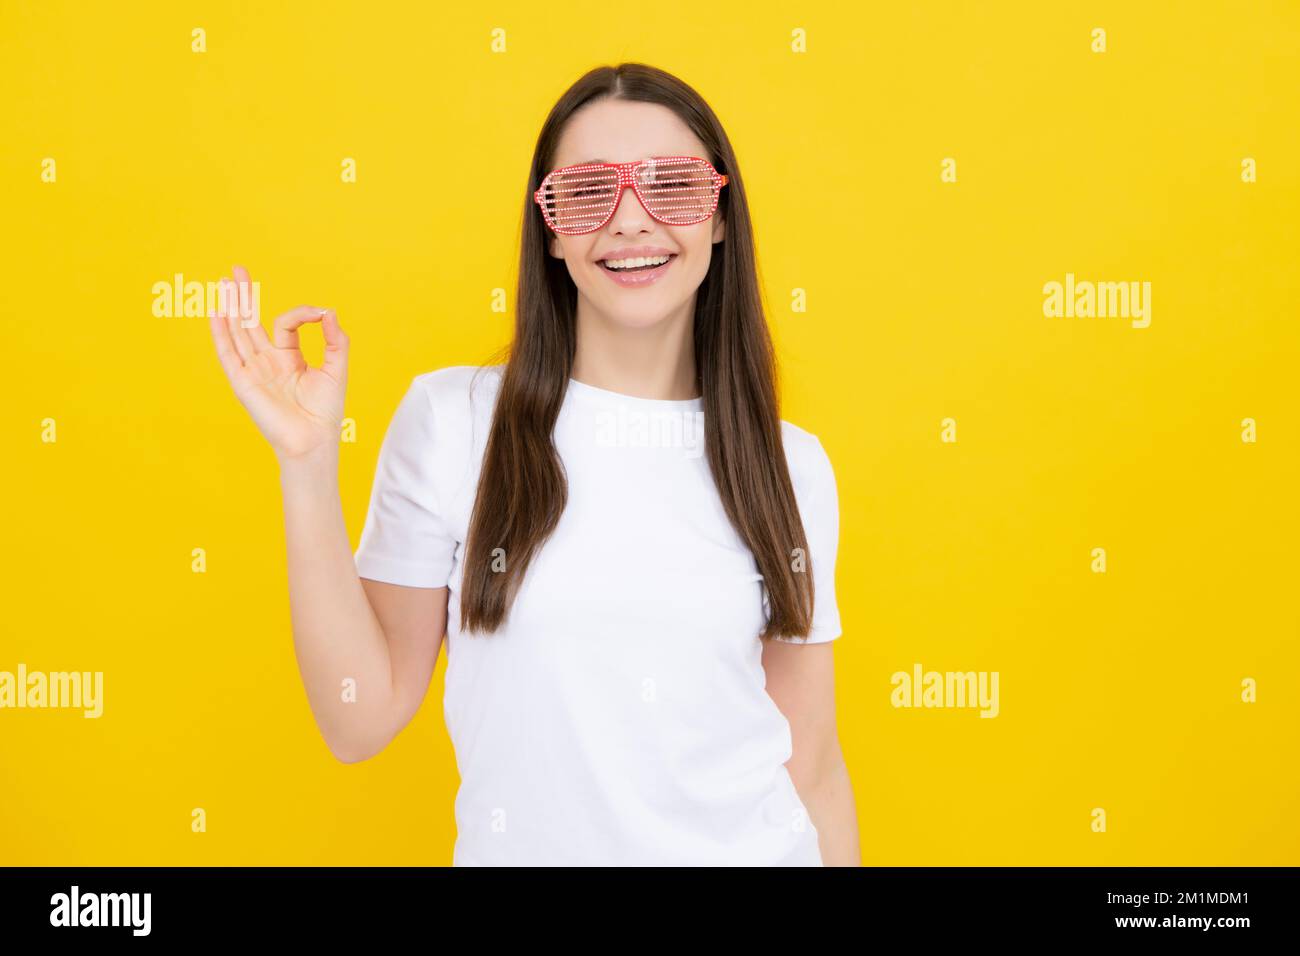 Porträt einer schönen Frau mit lustigen Gläsern. Feiern und feiern. Mädchen mit Spaß, Porträt auf gelbem Hintergrund. Stockfoto